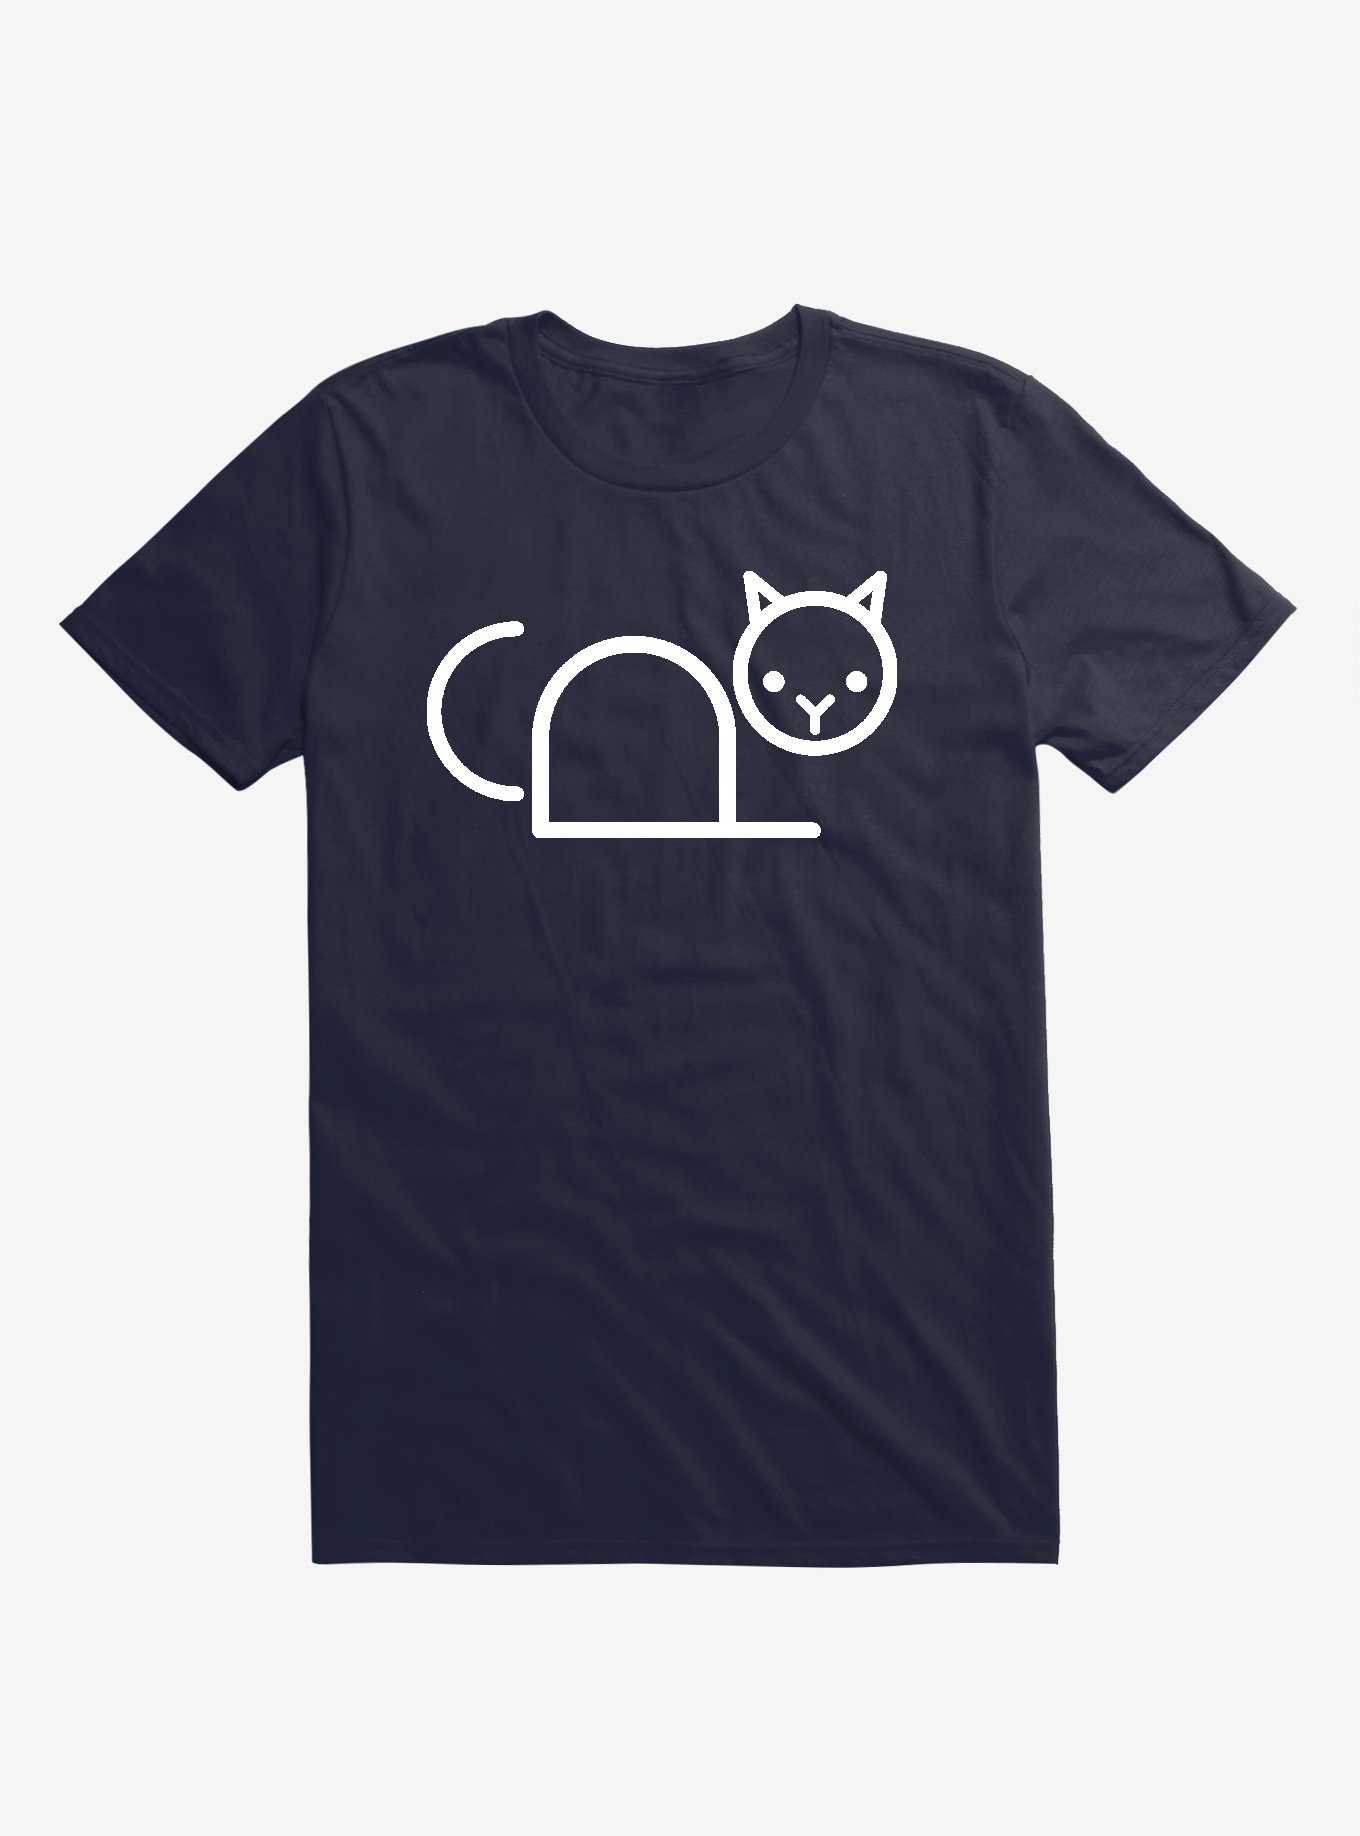 Copy Cat Navy Blue T-Shirt, , hi-res